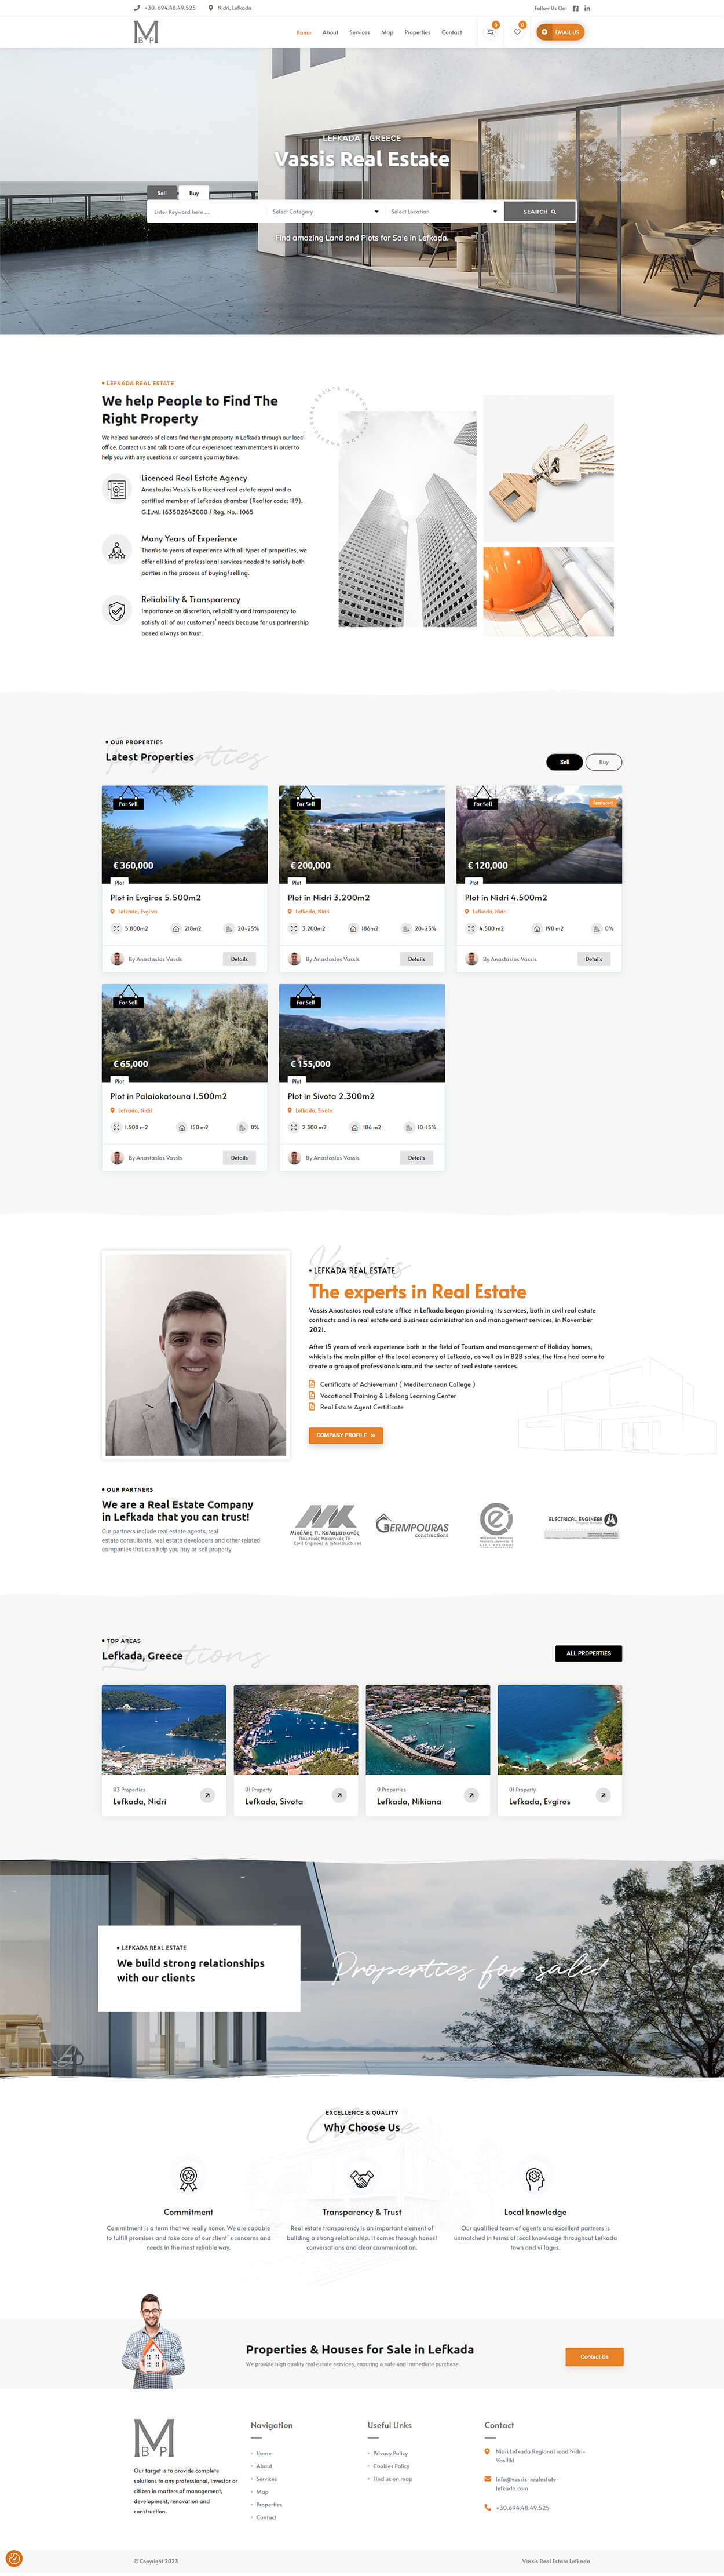 Κατασκευή ιστοσελίδων Webex - Κατασκευή ιστοσελίδας για Real Estate agency στη Λευκάδα.